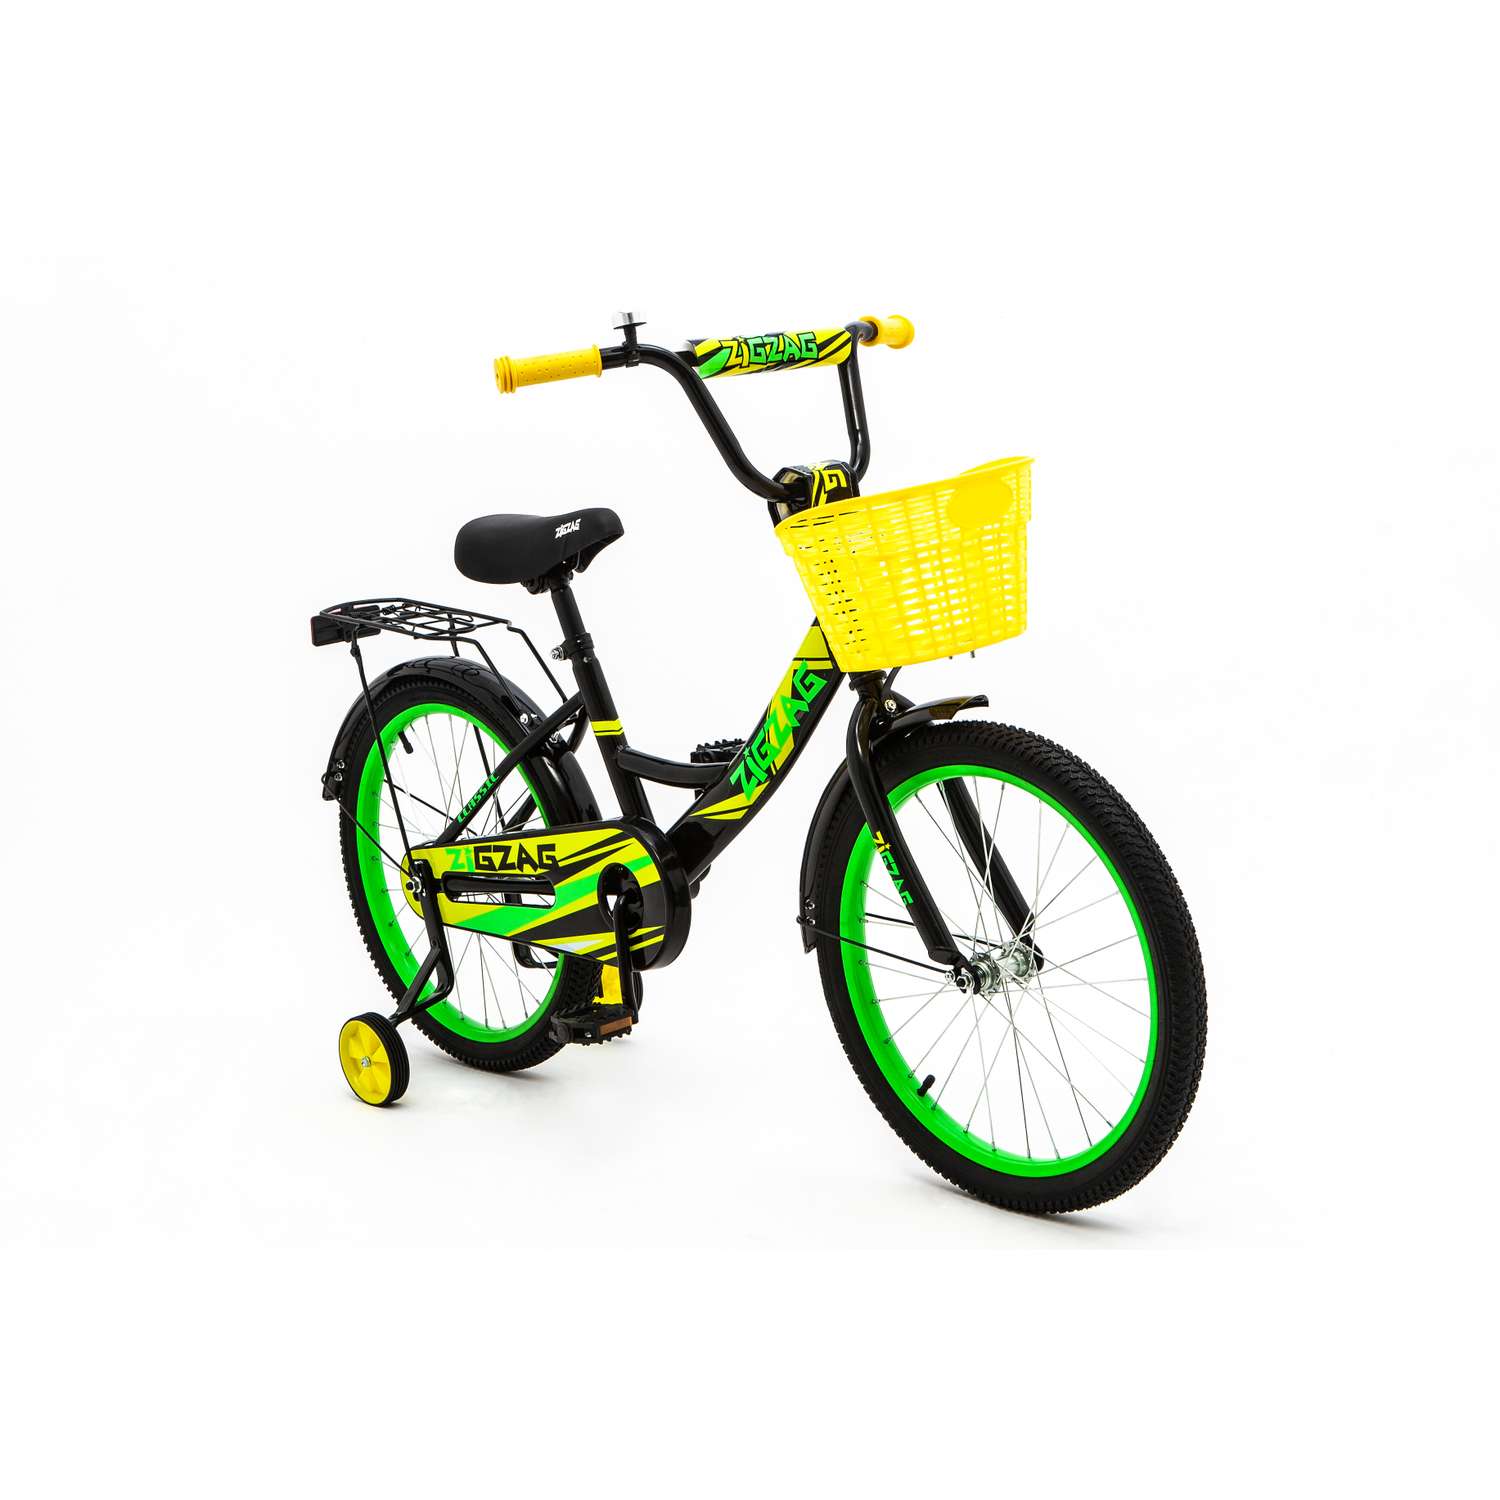 Велосипед ZigZag CLASSIC черный желтый зеленый 20 дюймов - фото 2